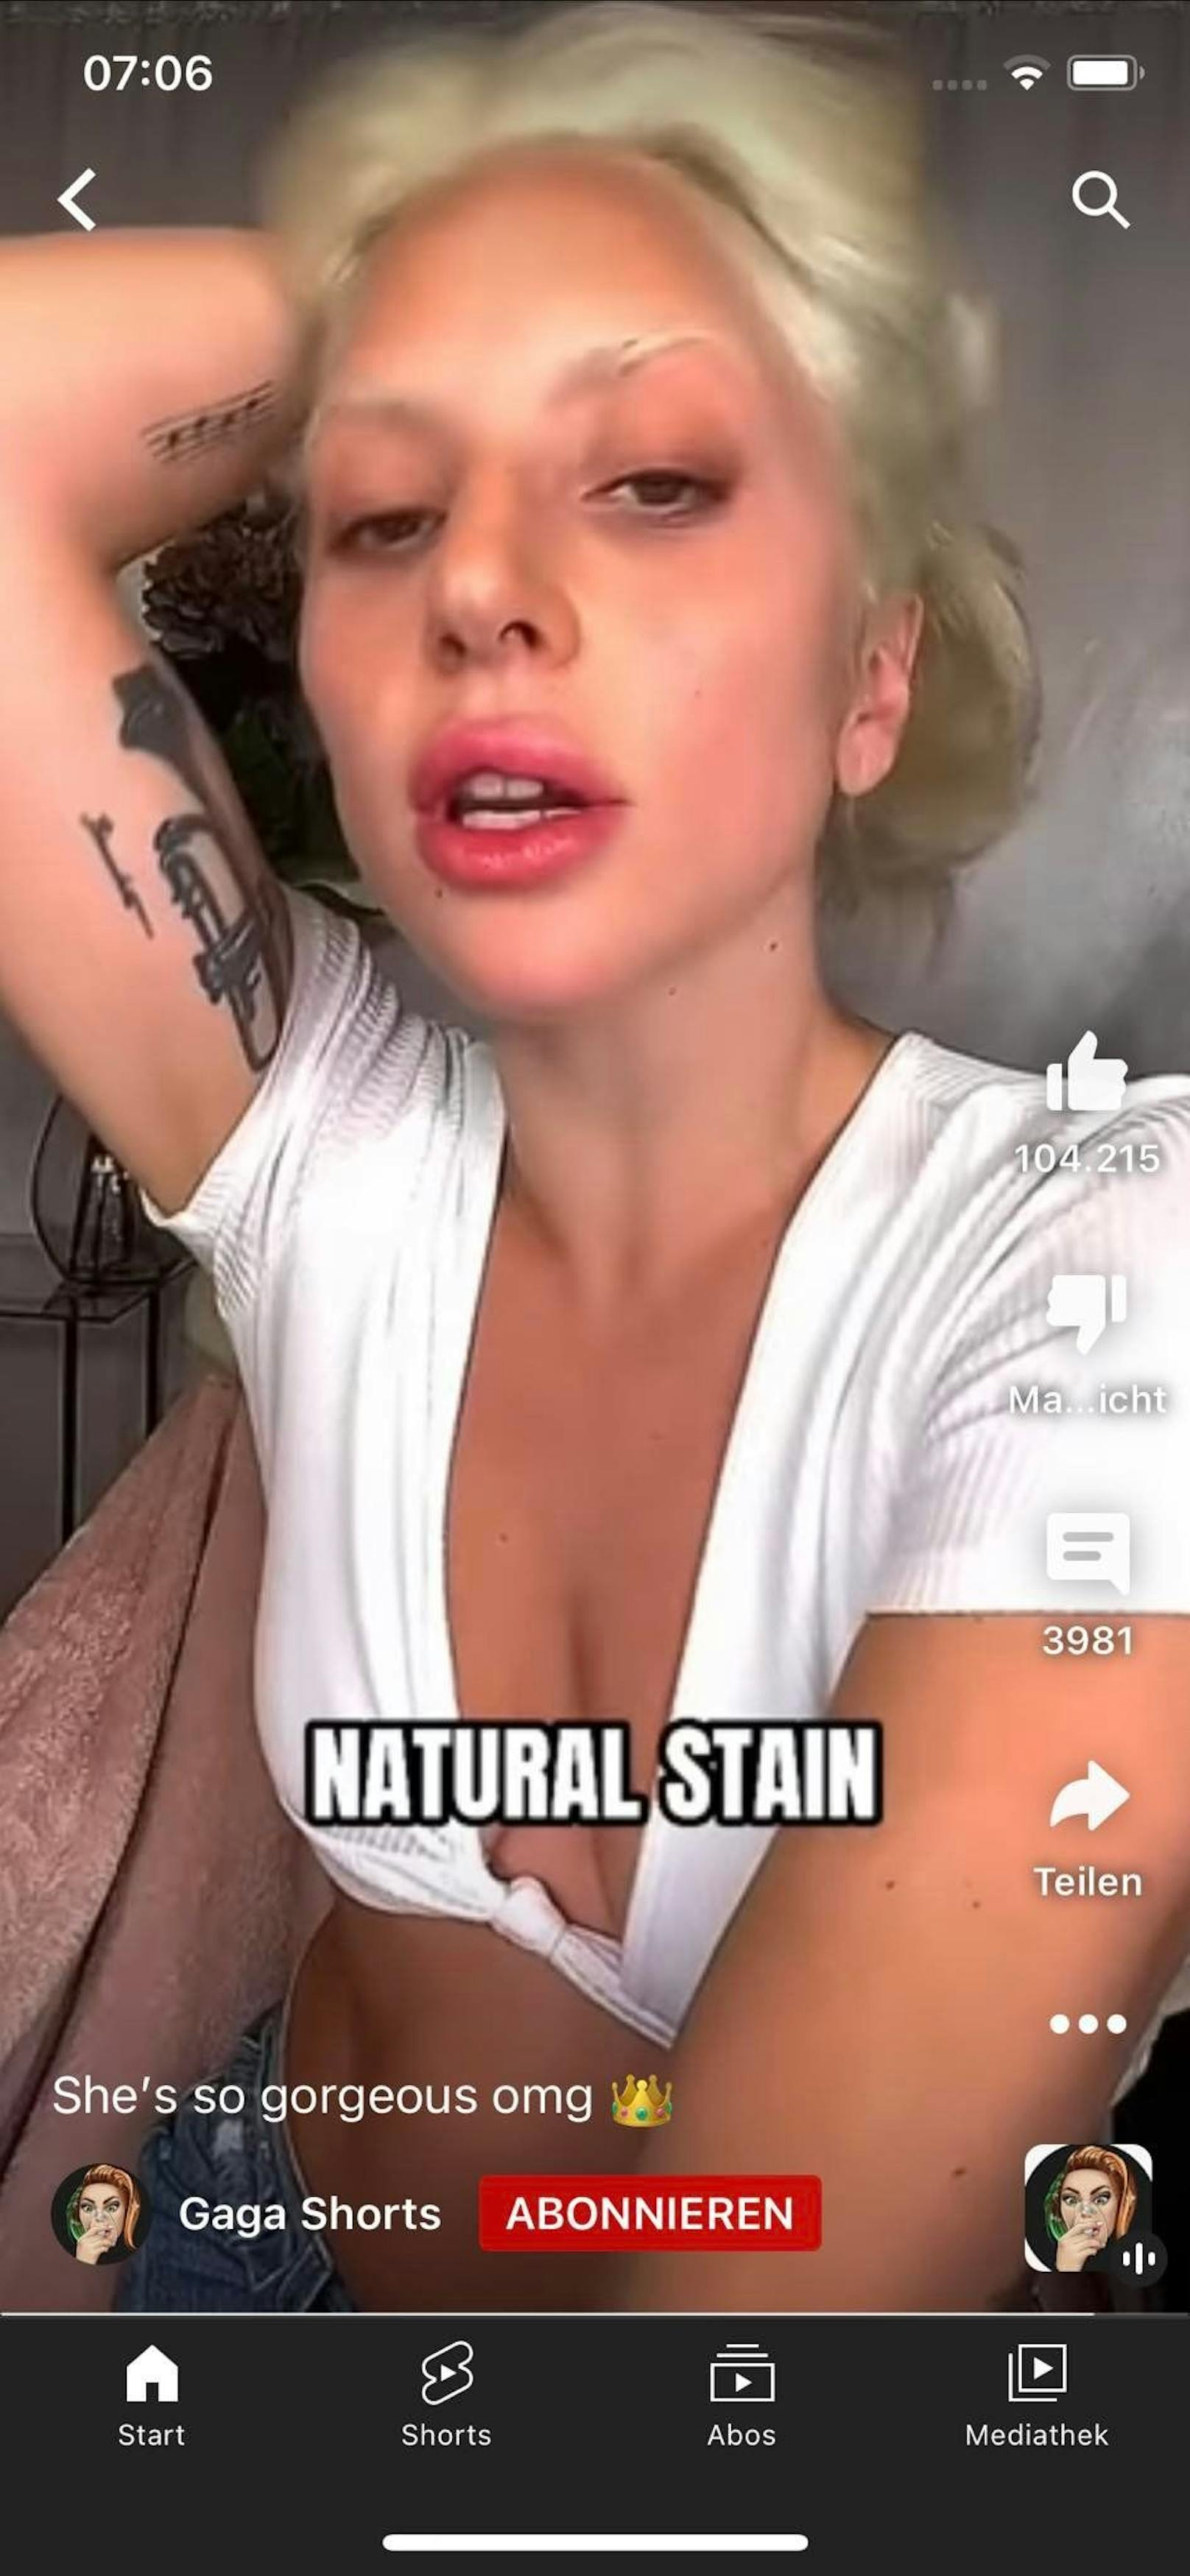 Bei Lady Gaga ging die "dicke Lippe" gehörig schief